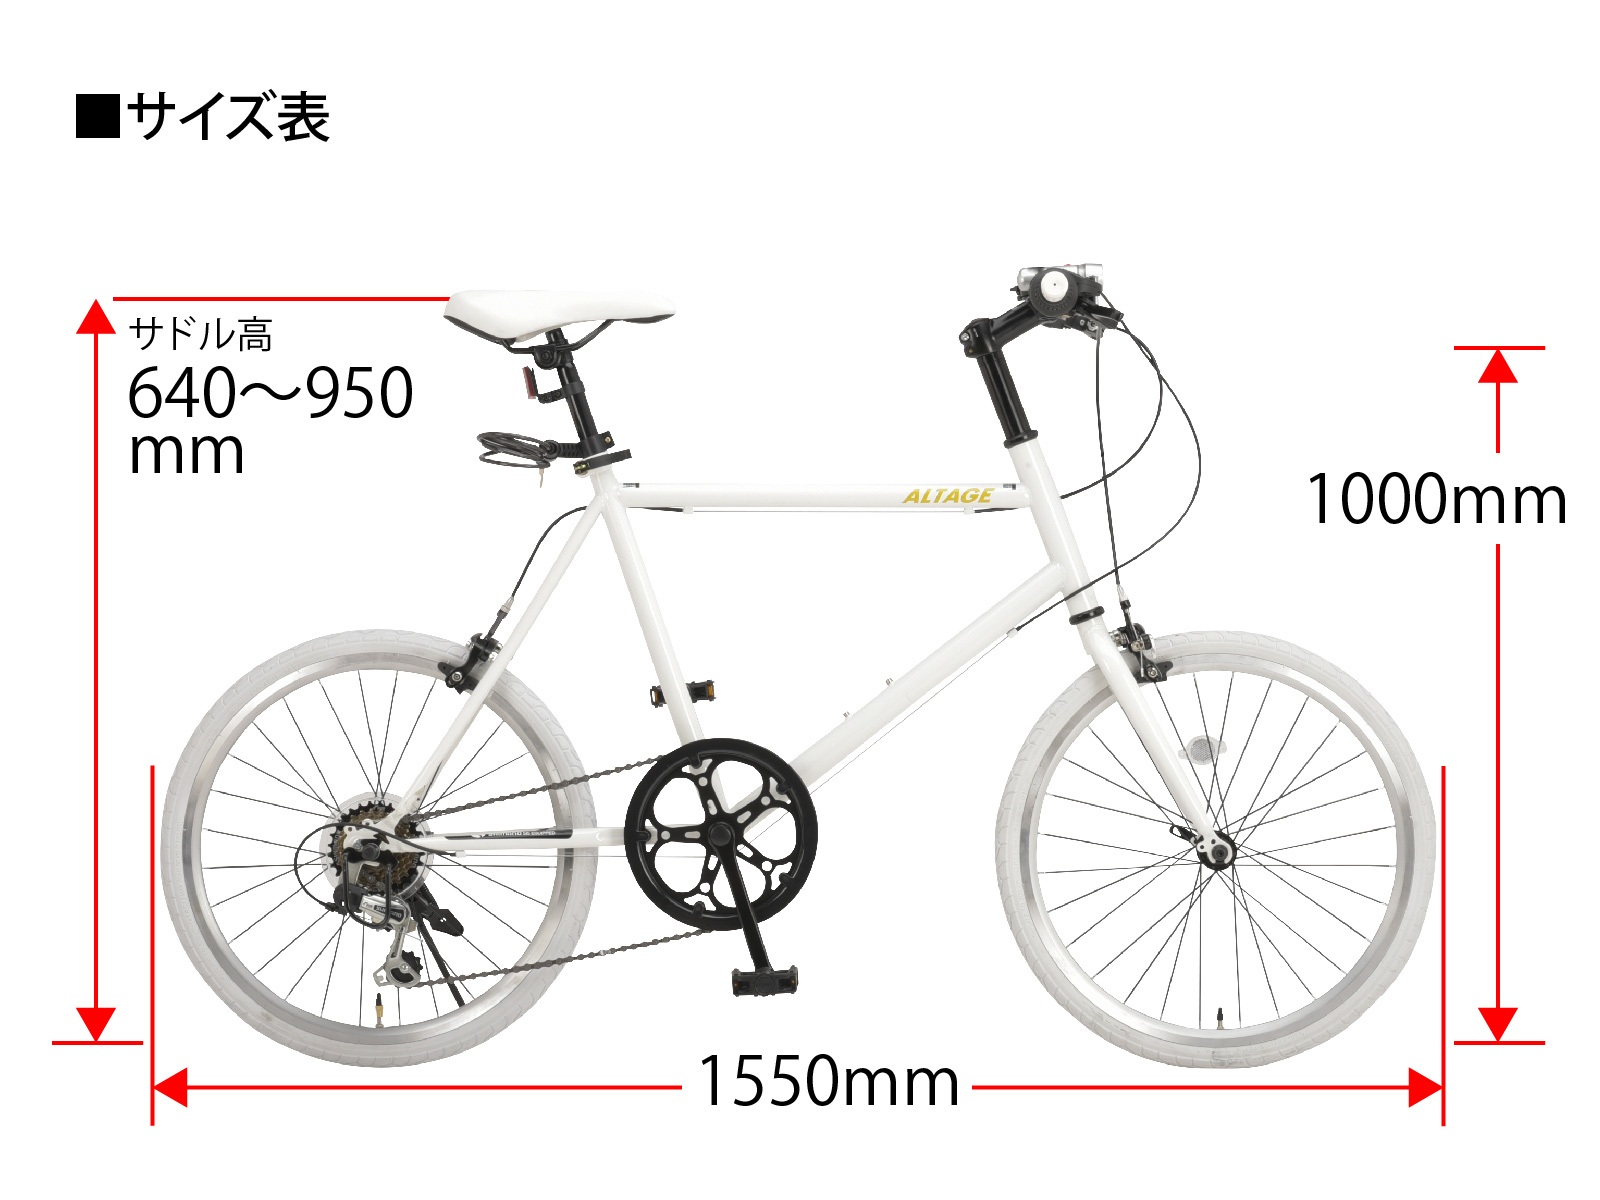 12772円 【74%OFF!】 ALTAGE 自転車 AMV-001 20インチミニベロ ブラック